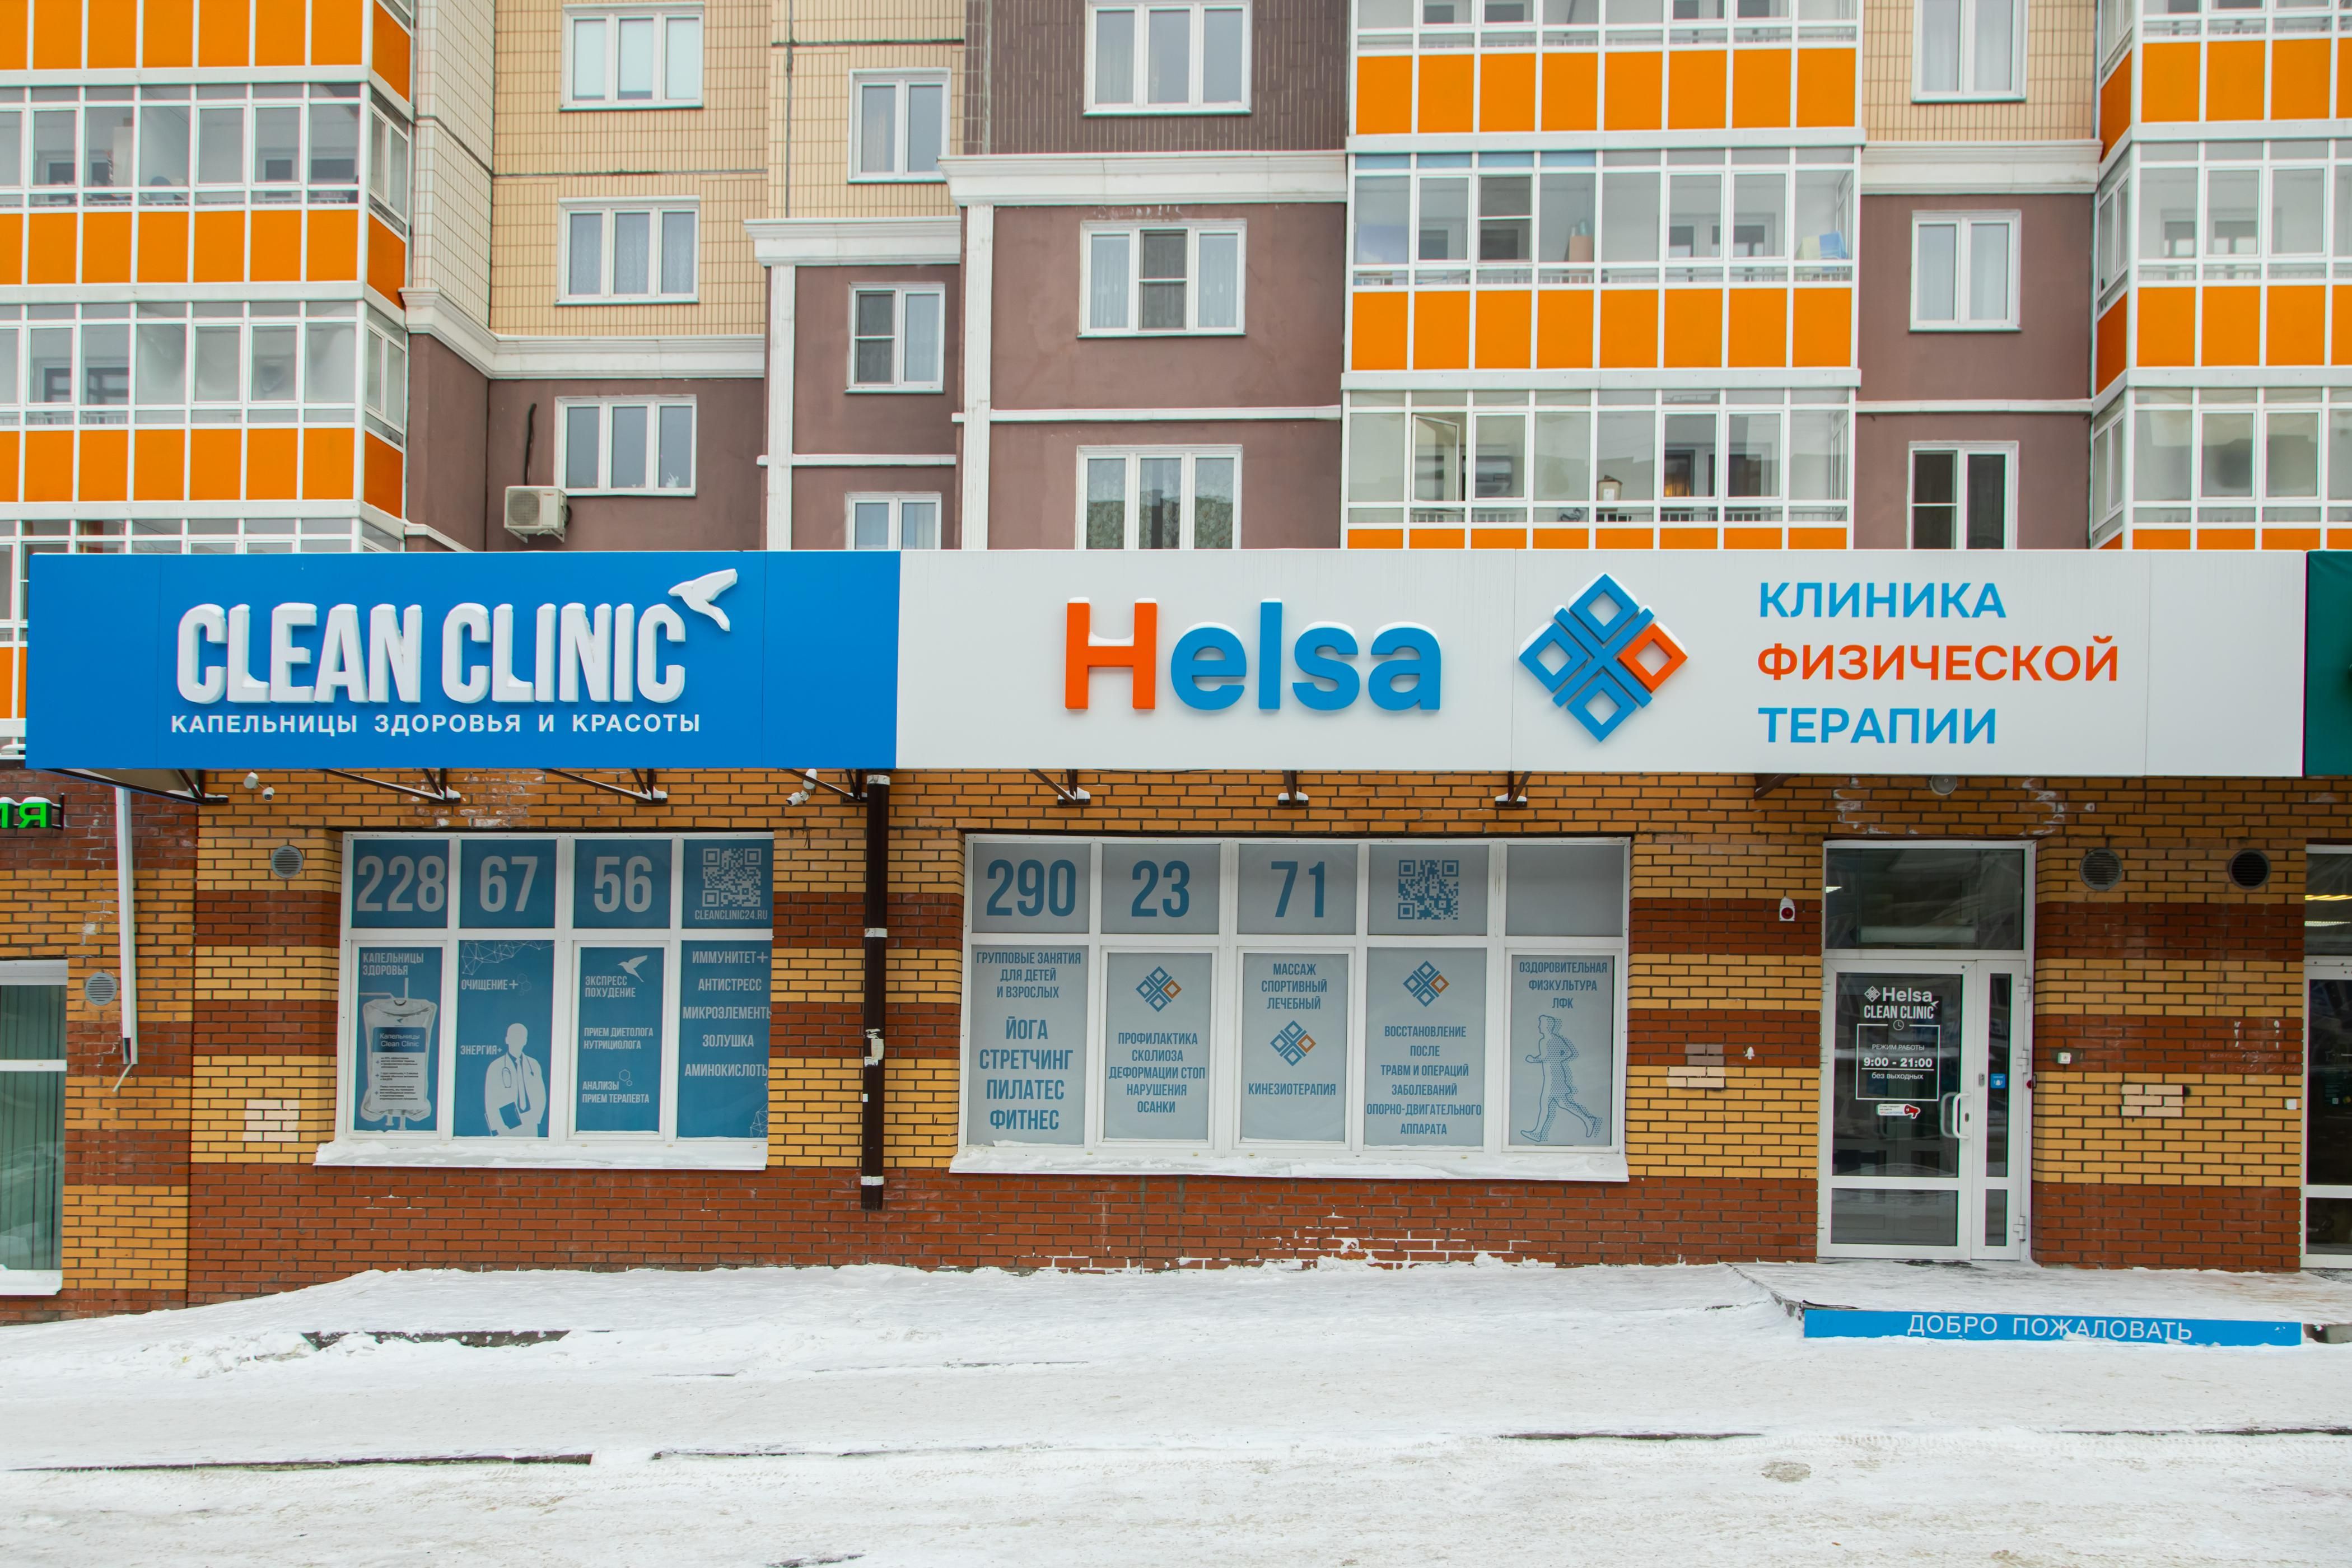 Медицинская клиника в Красноярске Clean Clinic